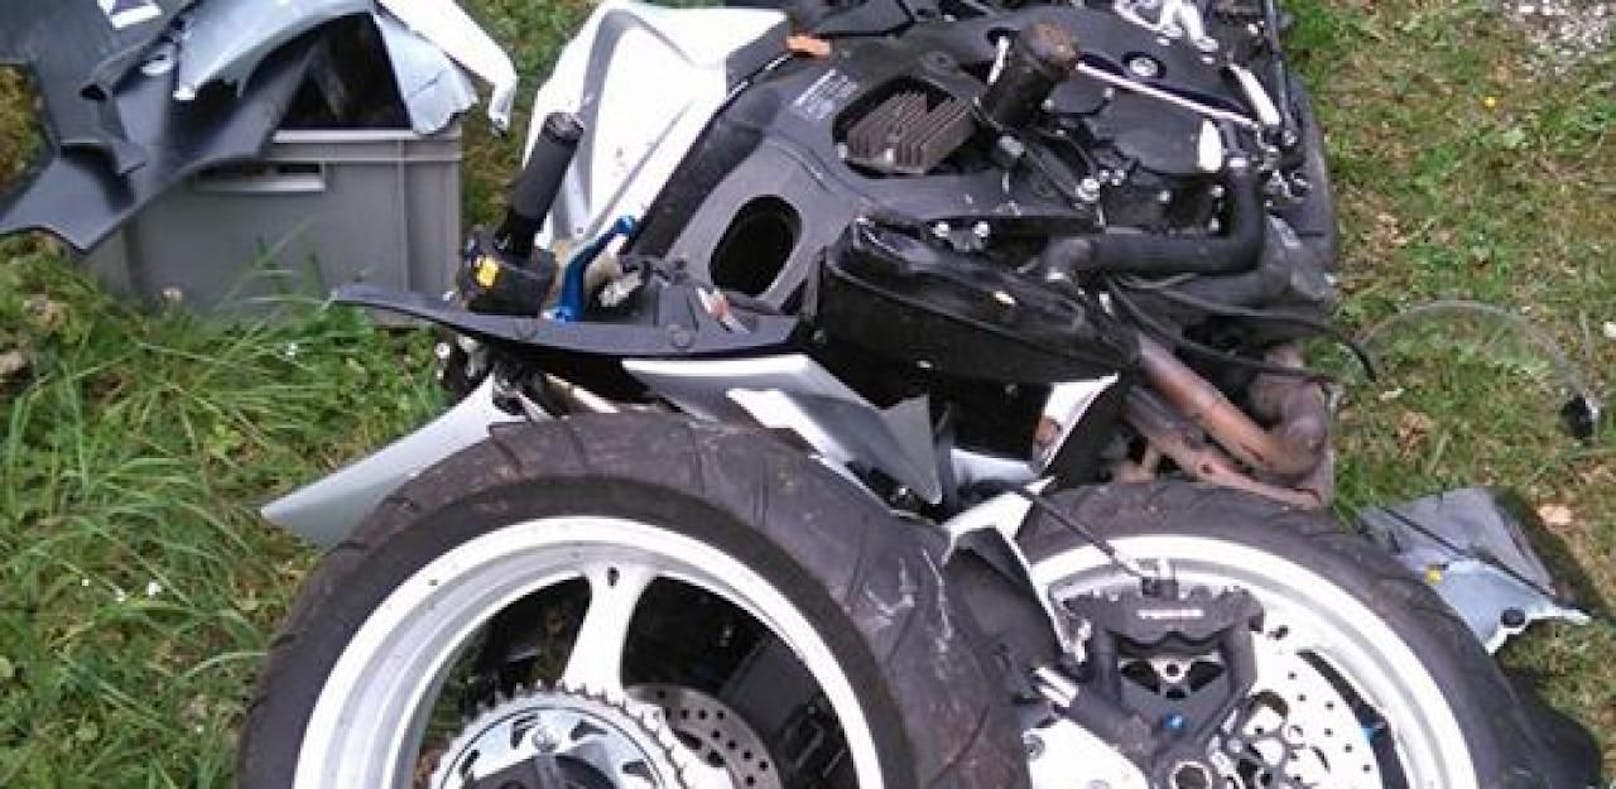 Bikerin stürzte: Motorrad zerschellte in Einzelteile